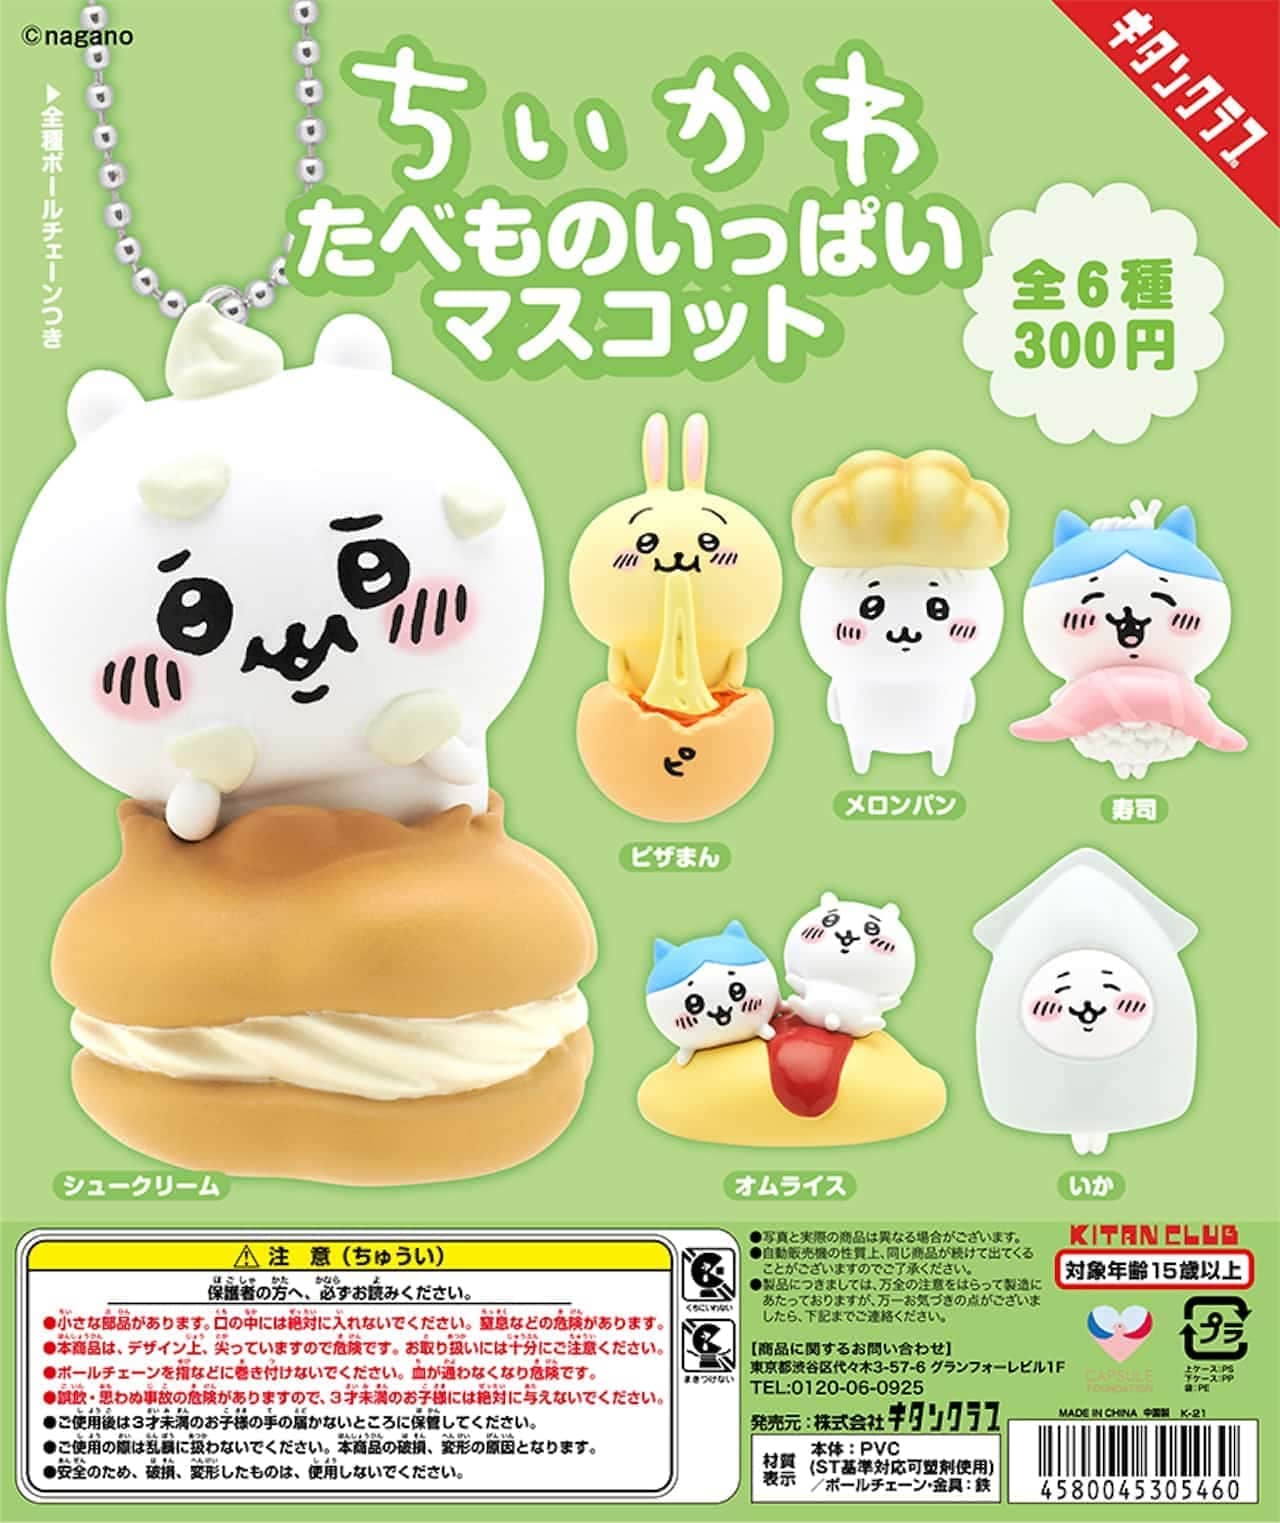 Kitan Club "A mascot full of Chiikawa food"